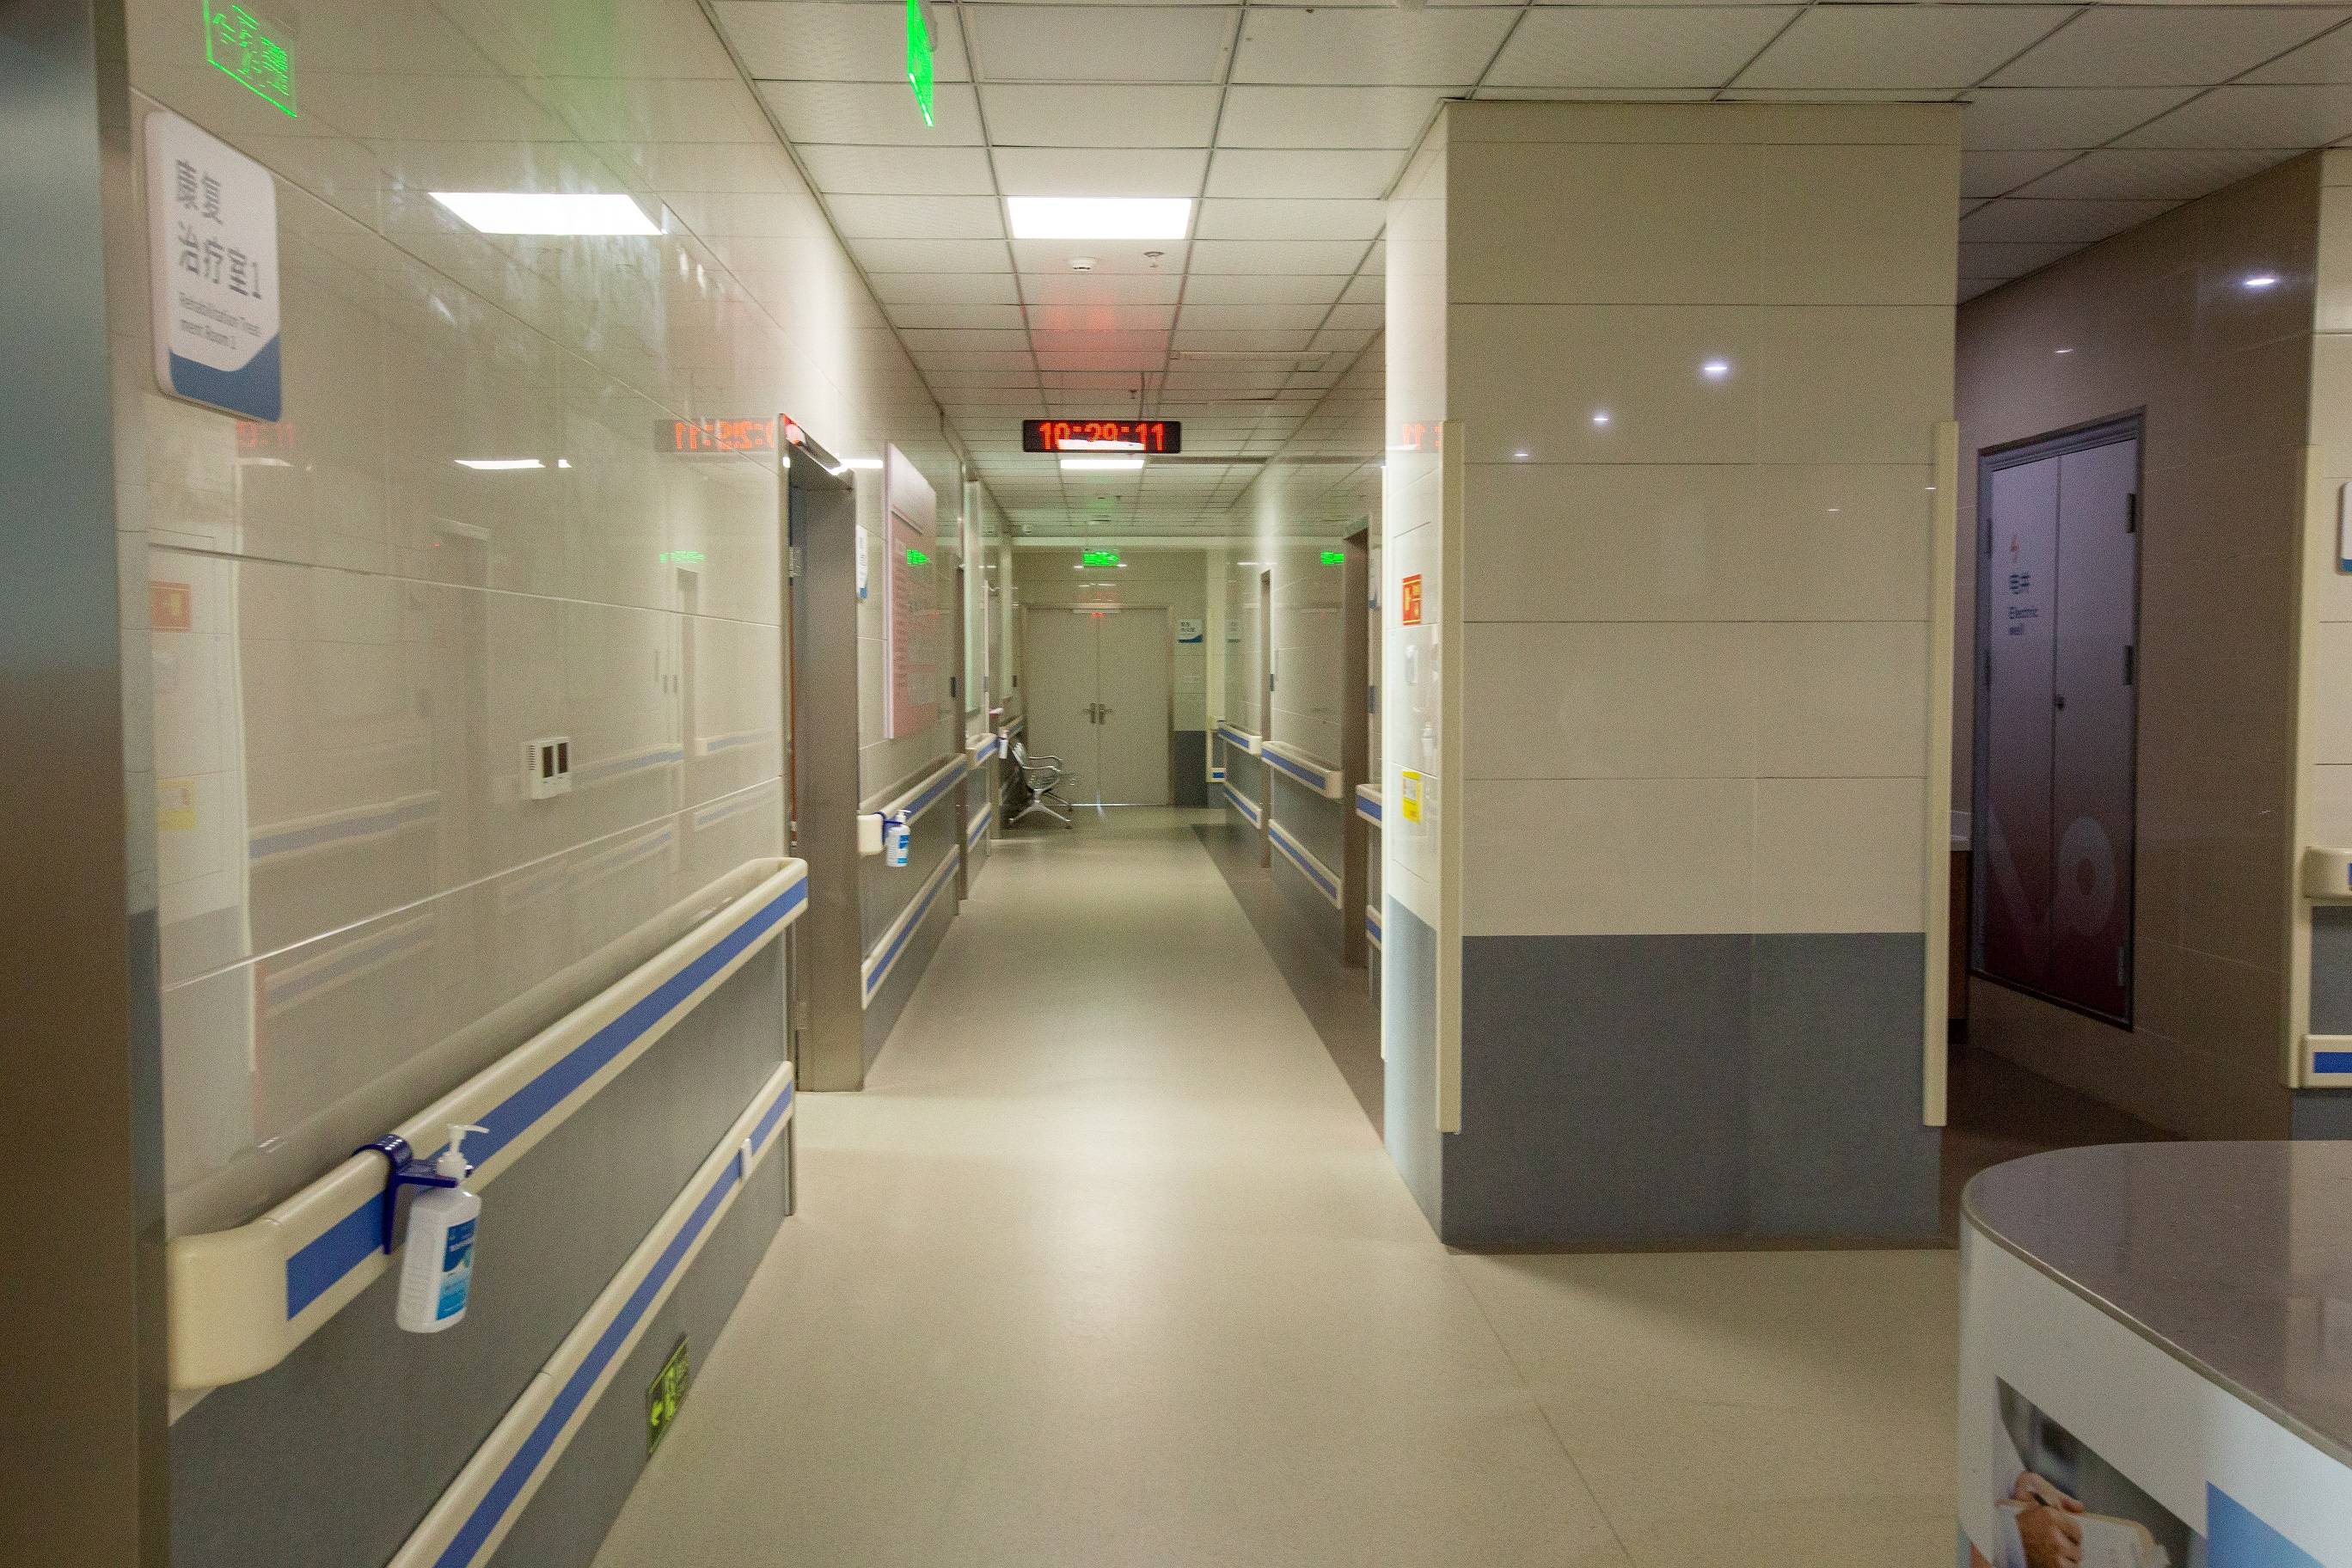 你发现了吗唯医骨科医院每个走廊都设计有扶手